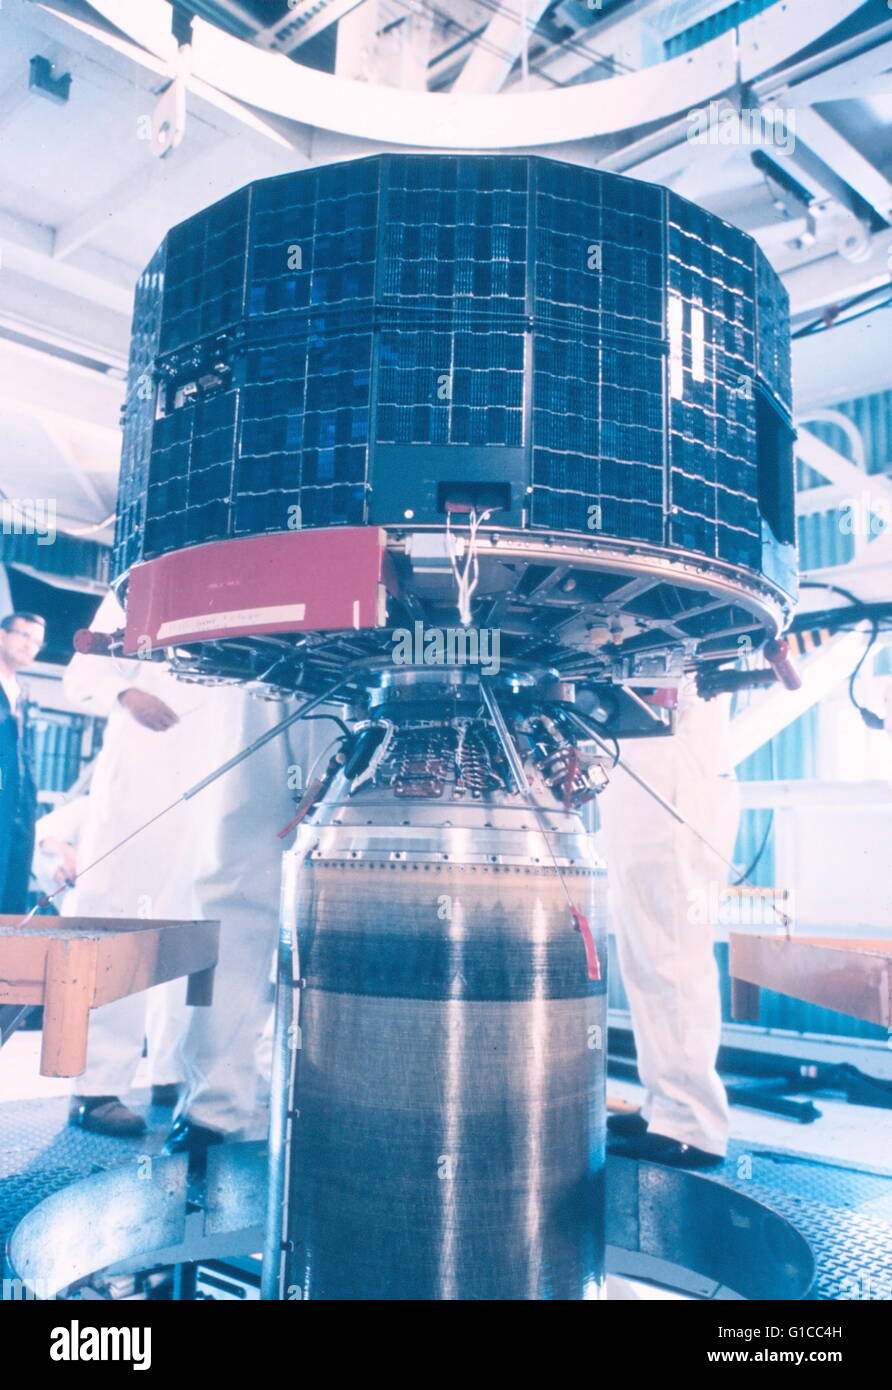 Satellite TIROS accouplés à fusée pour le lancement, 1960. Banque D'Images